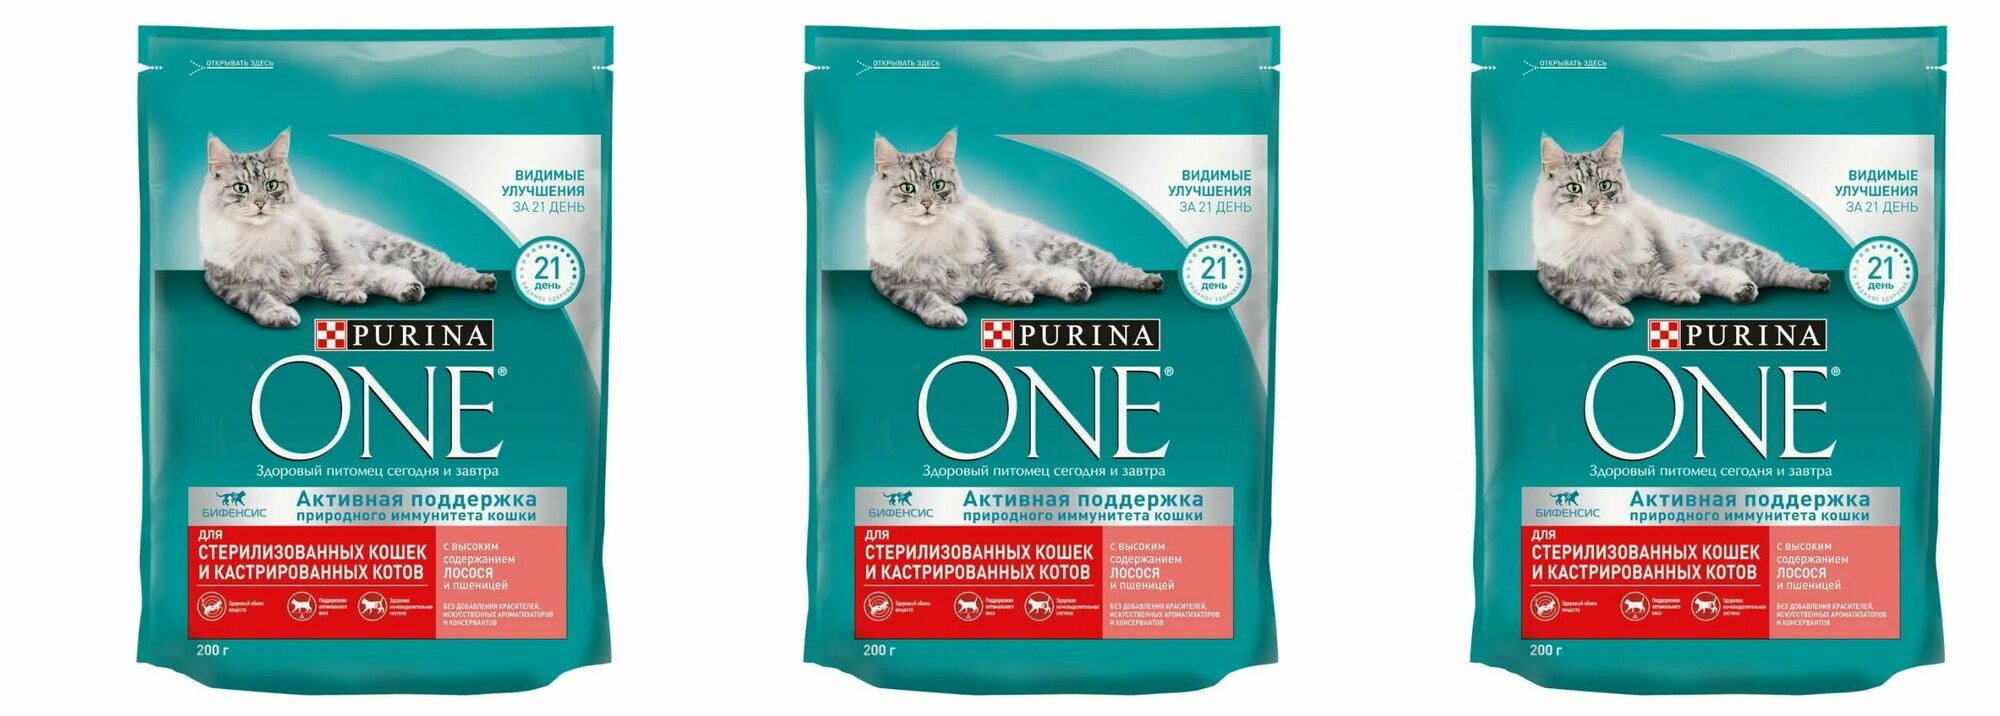 Purina One сухой корм для стерилизованных кошек и кастрированных котов, с высоким содержанием лосося и пшеницей, 200 г, 3 шт